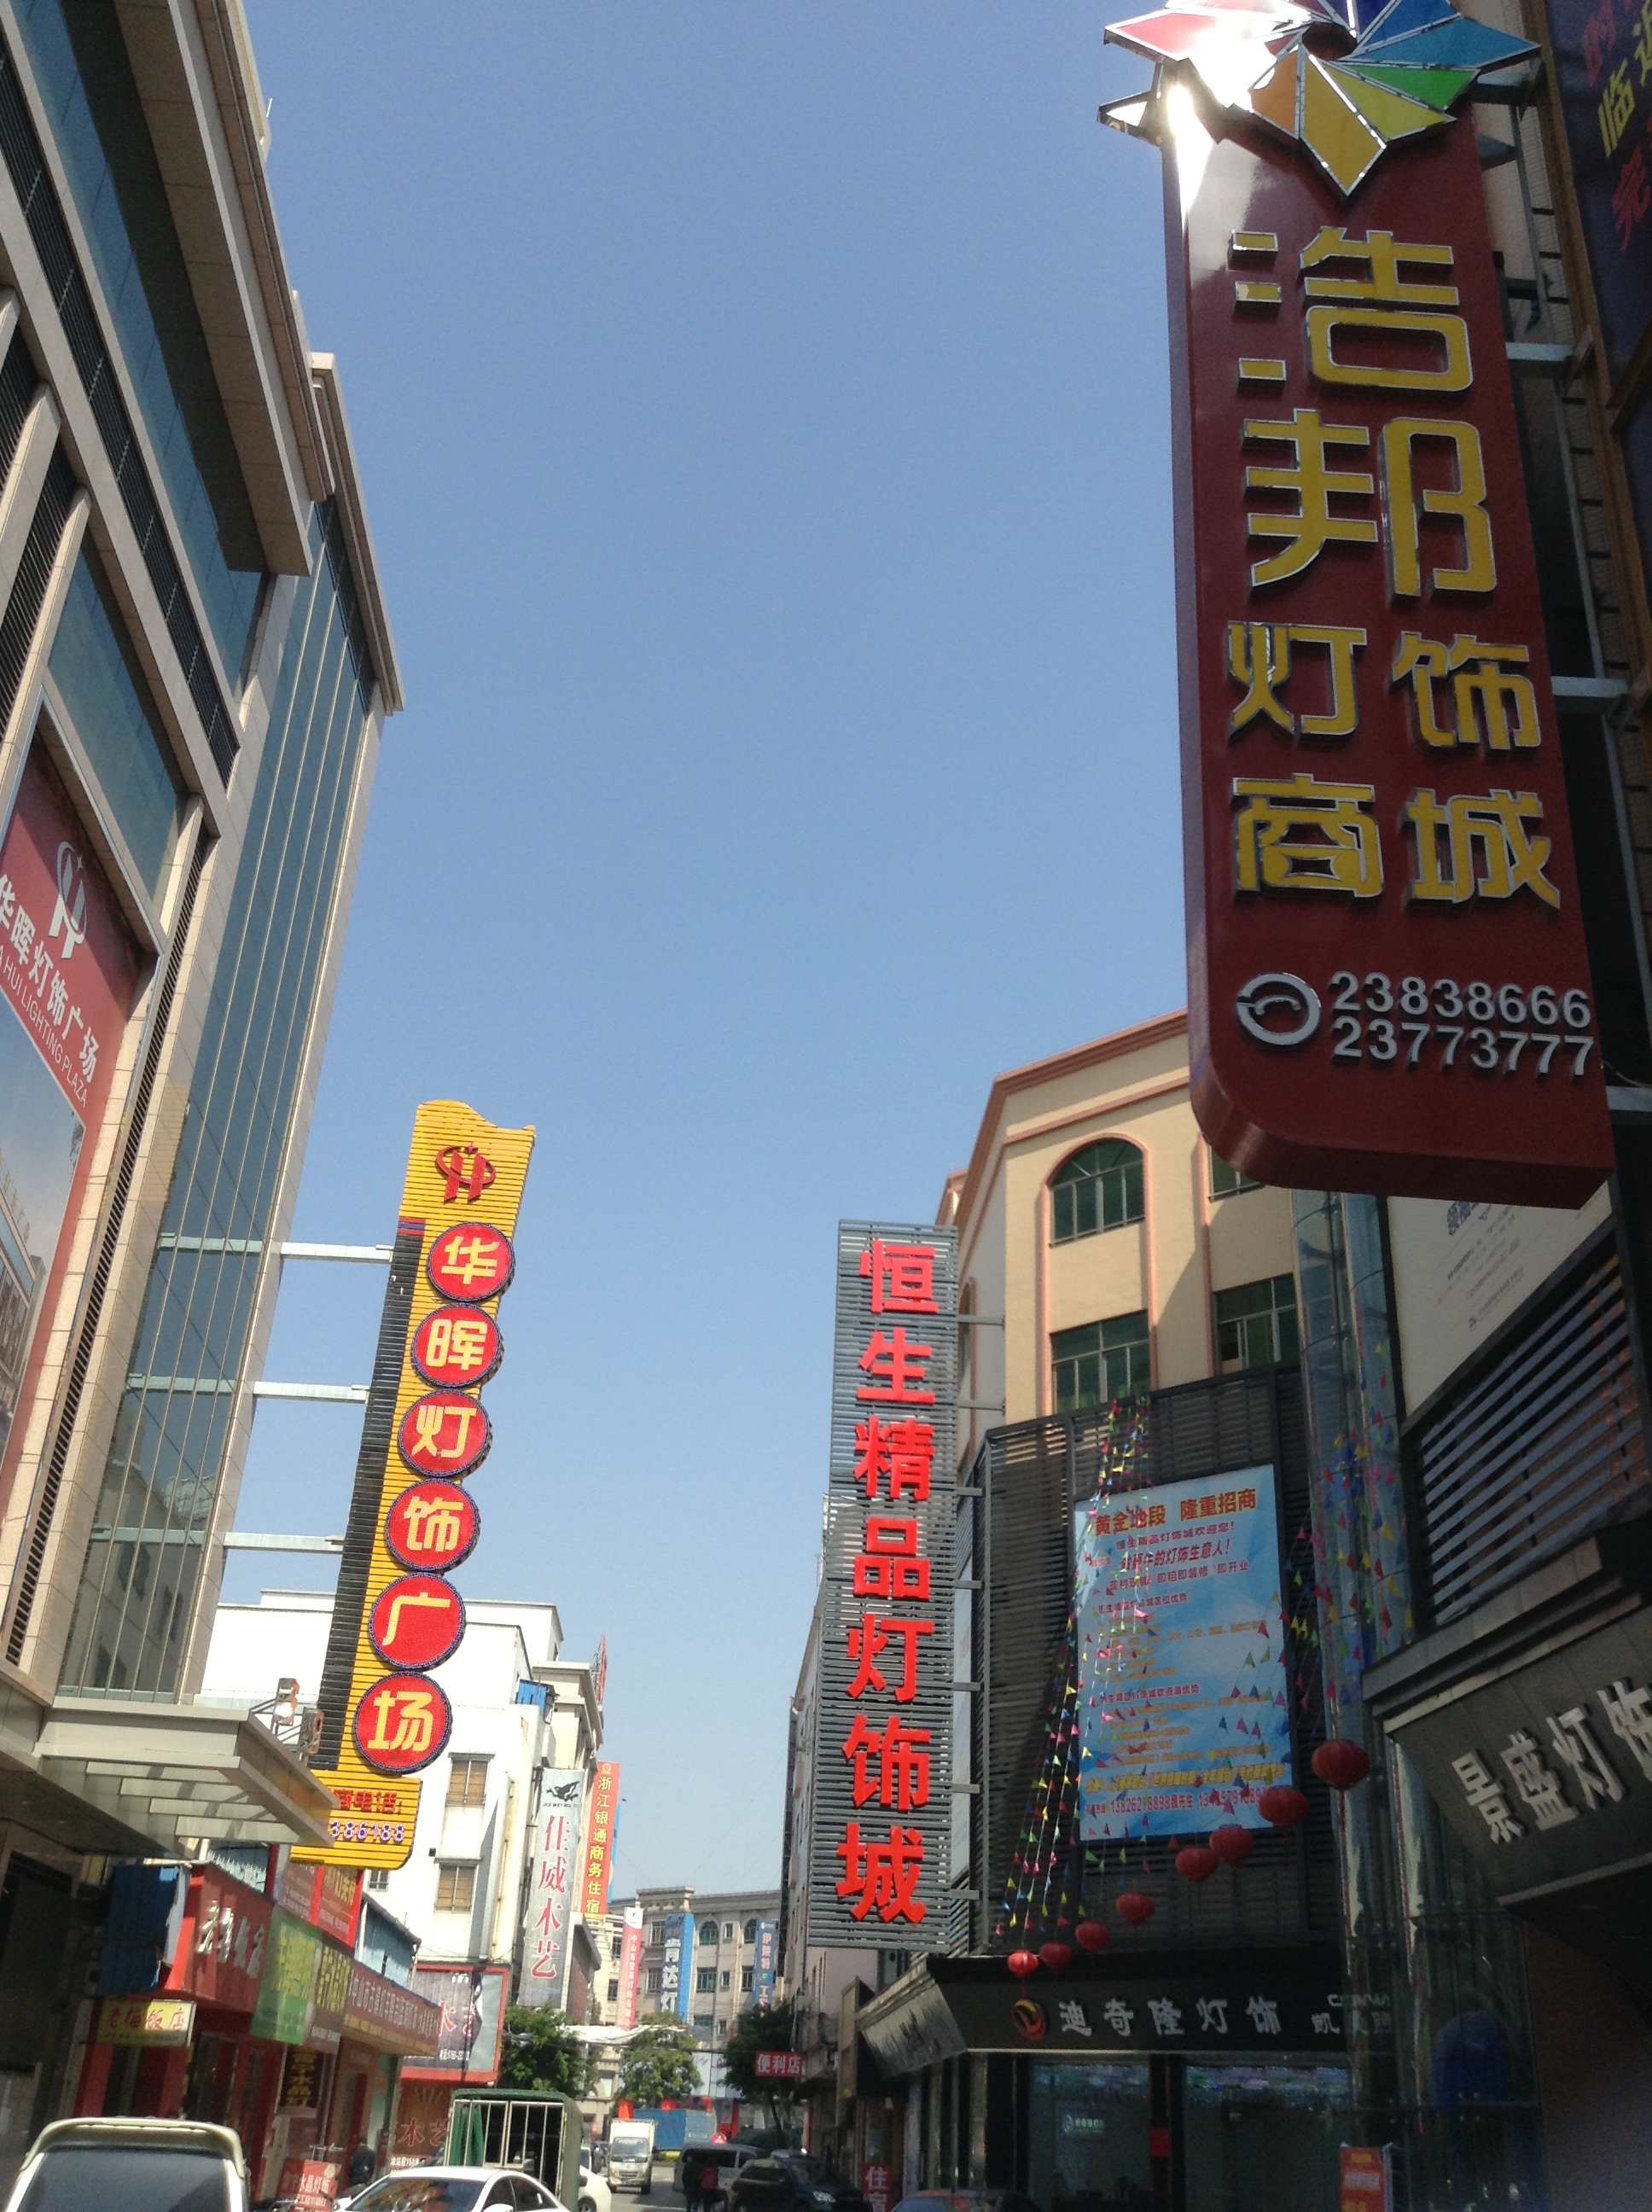 LED Wholesale Markets in Guzhen, Zhongshan